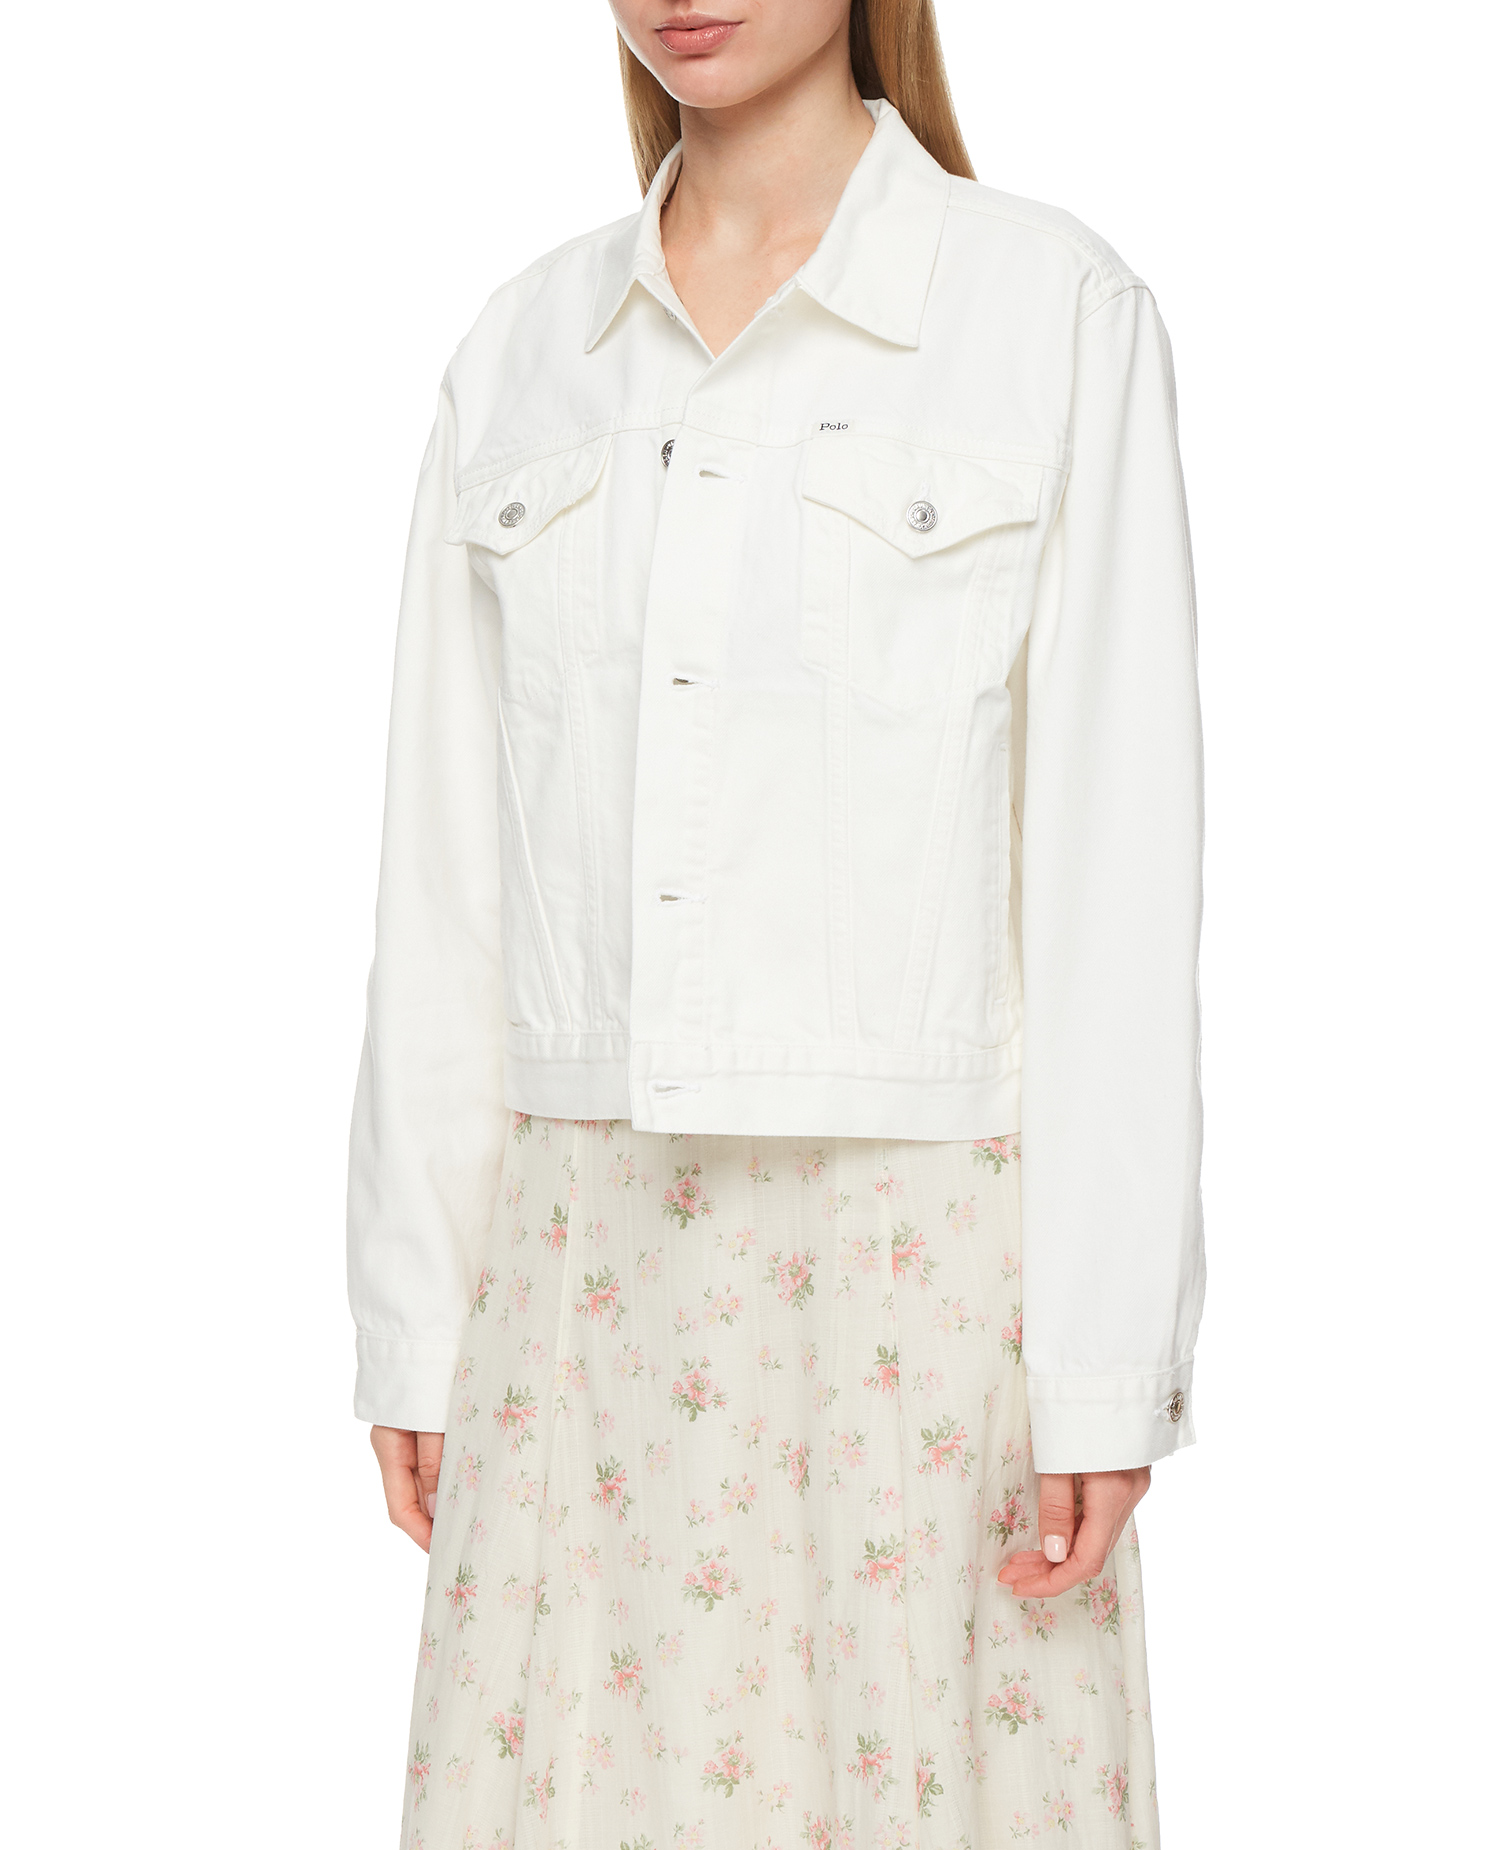 Женская белая джинсовая куртка 1